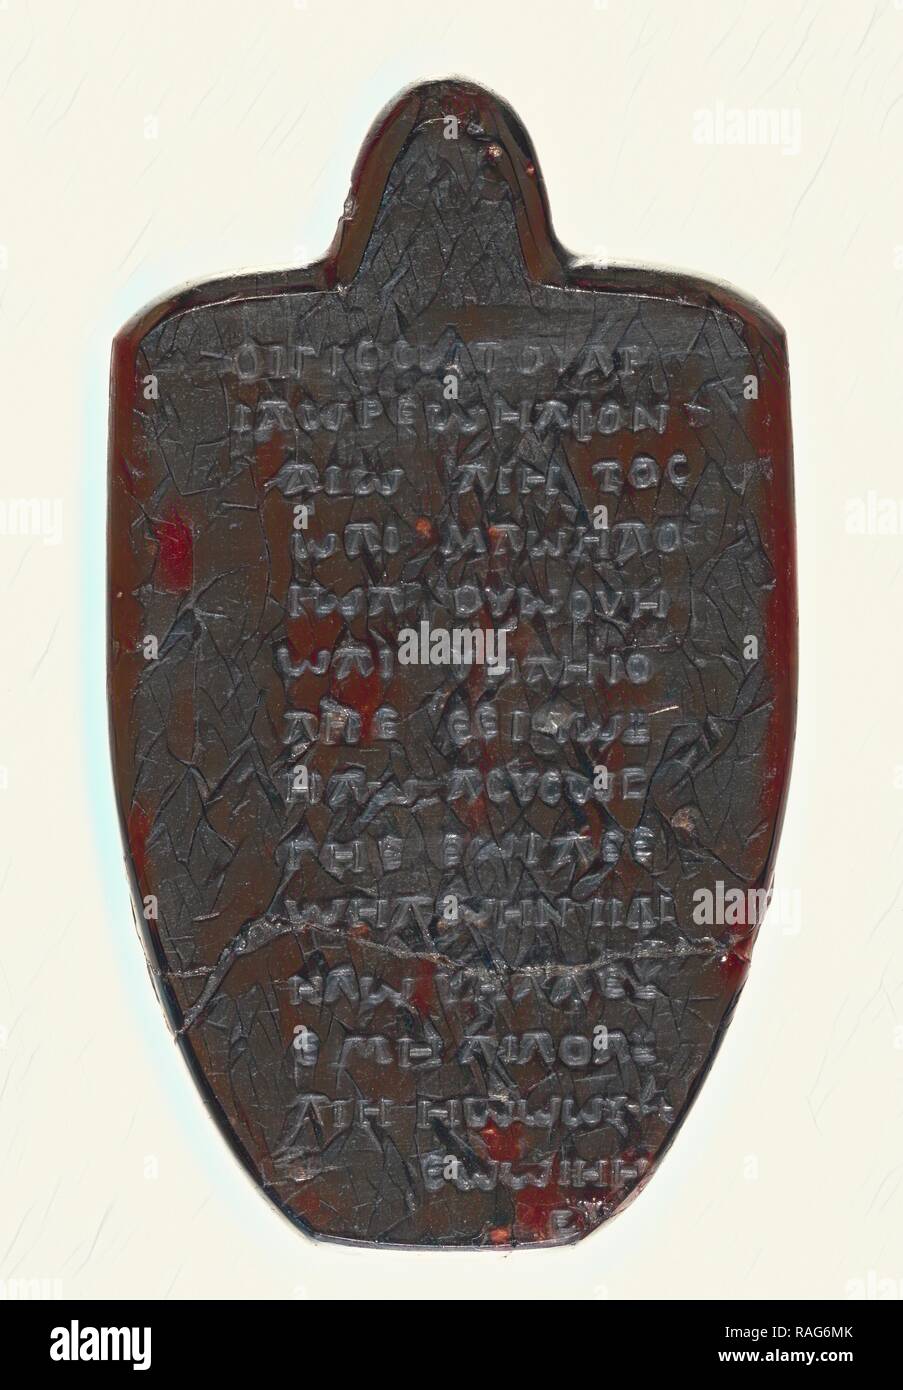 Amulette gnostique gravés sur un grenat, l'Europe ( ?), 18e siècle, grenat, 6,9 × 4 cm (2 × 1 11,16 9,16 in.). Repensé Banque D'Images